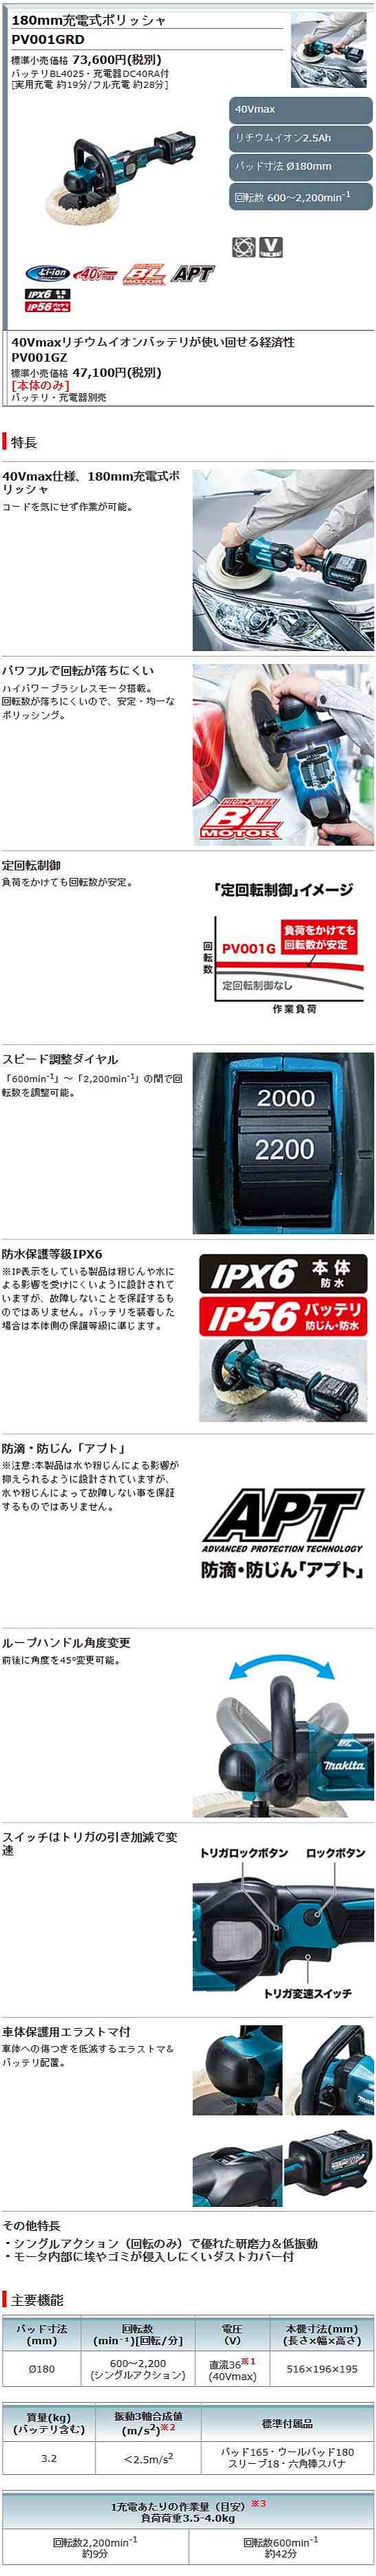 マキタ 充電式ポリッシャ PV001GRD バッテリ・充電器付き - 1